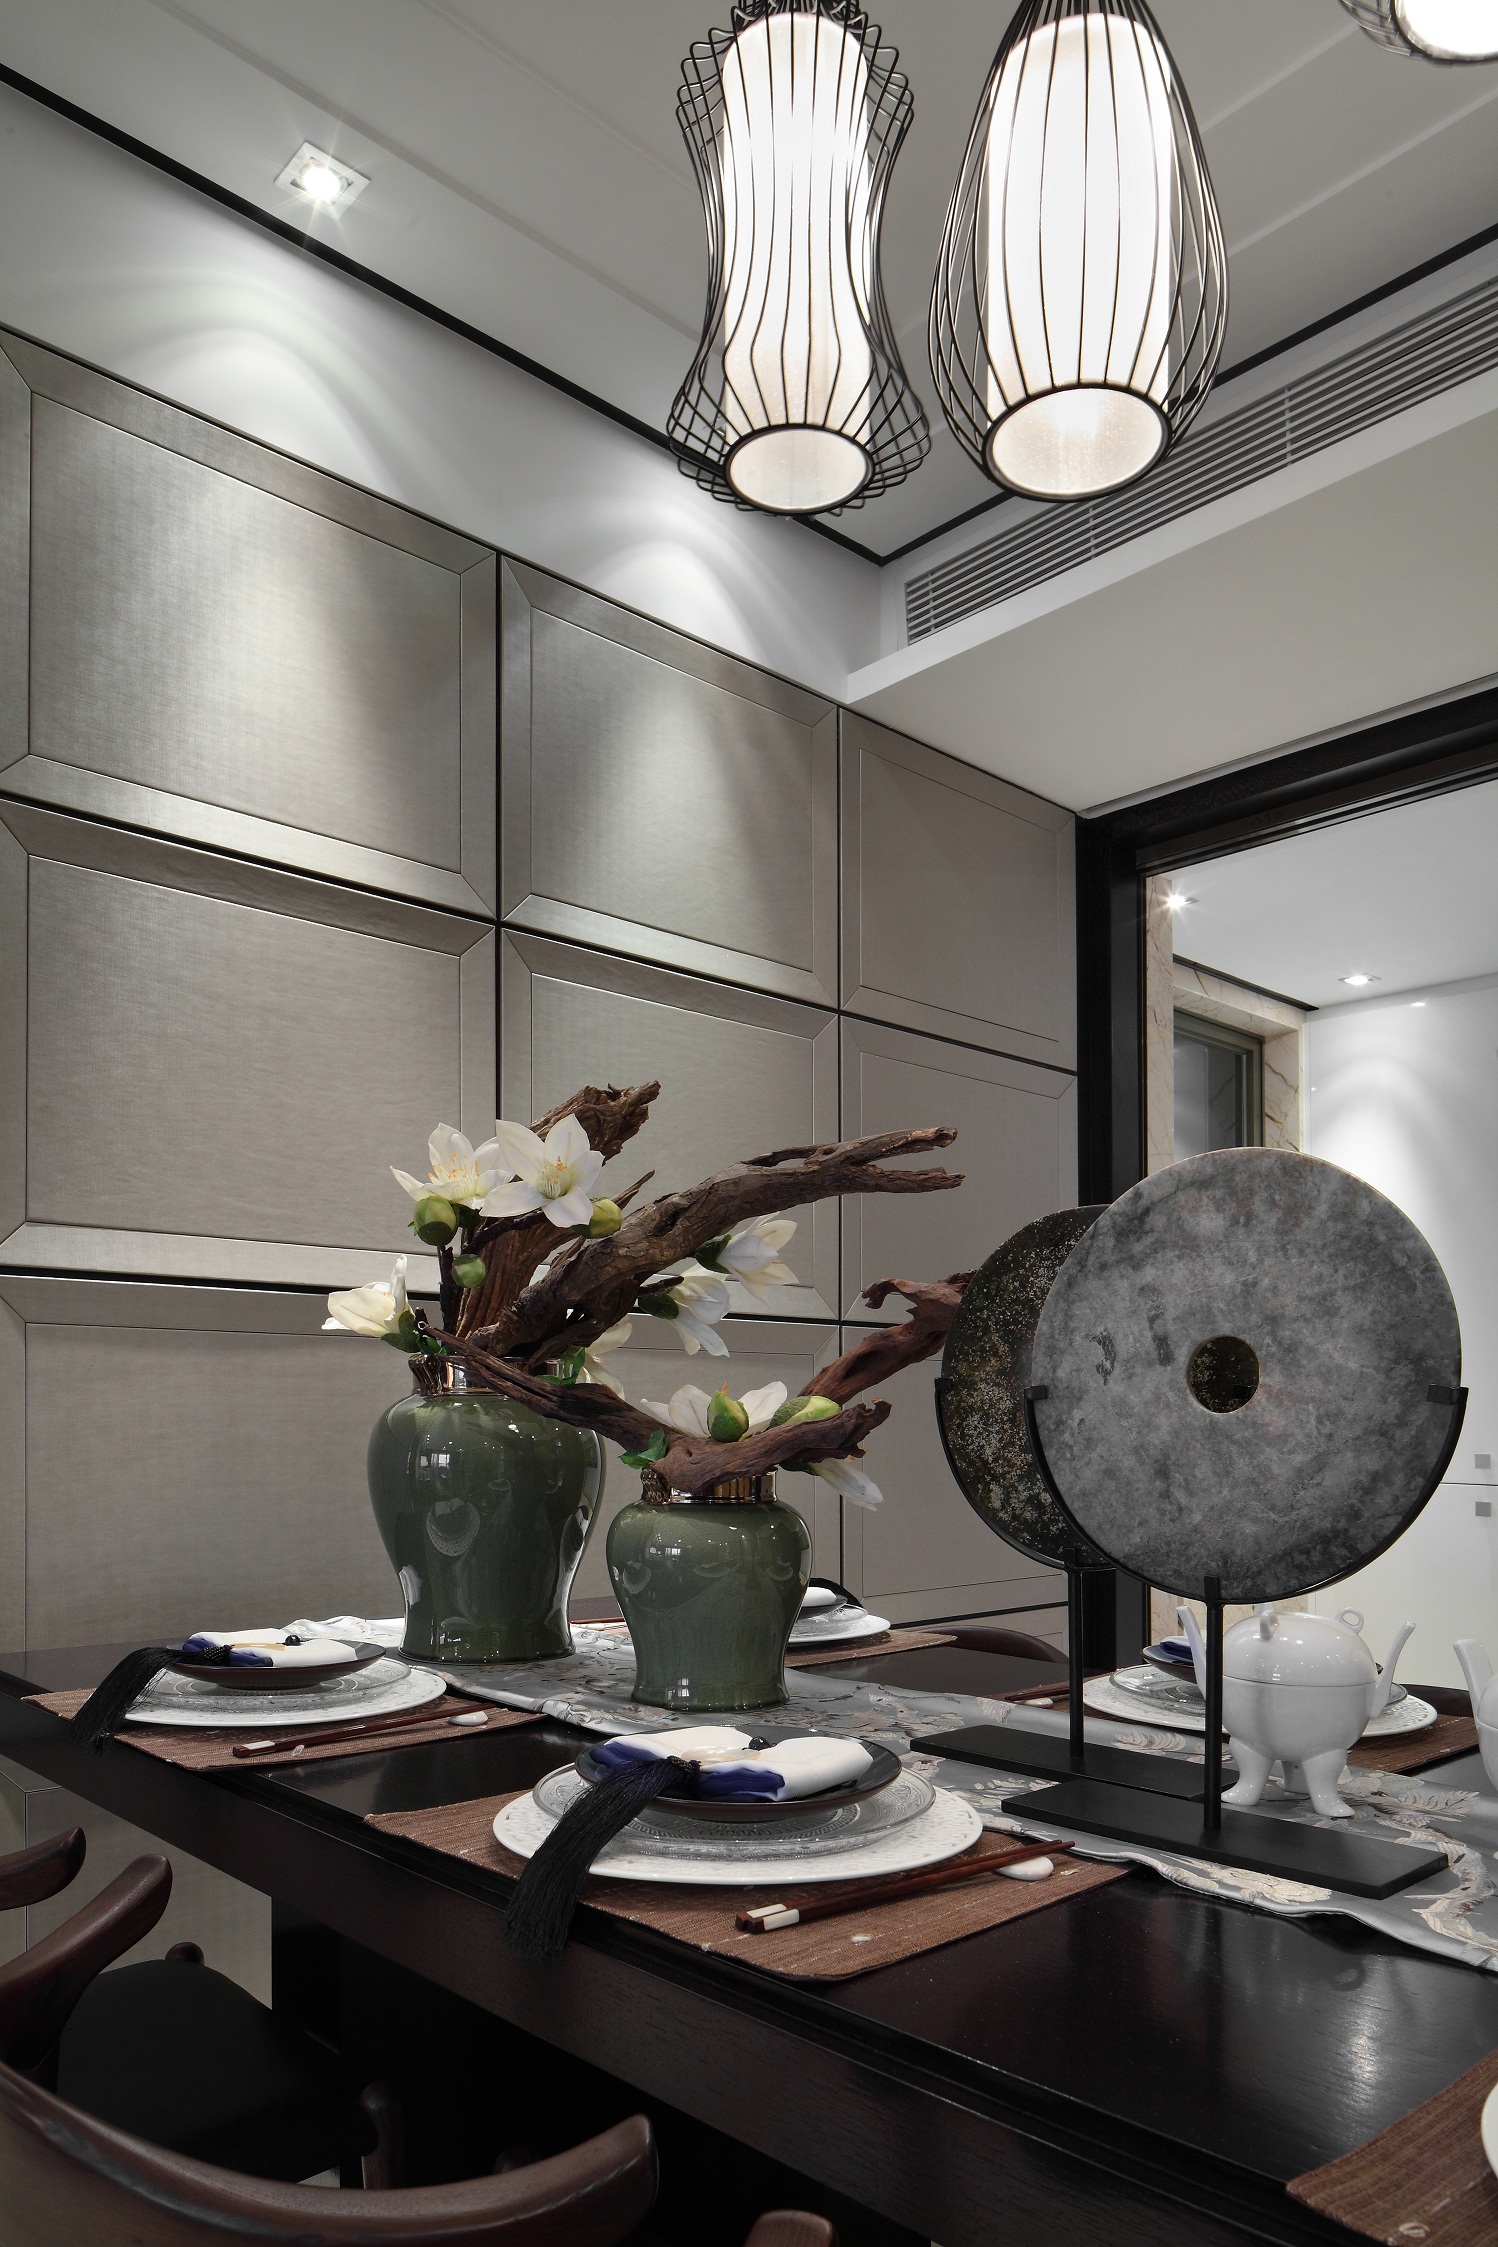 中国传统的室内设计融合着庄重和优雅的双重品质